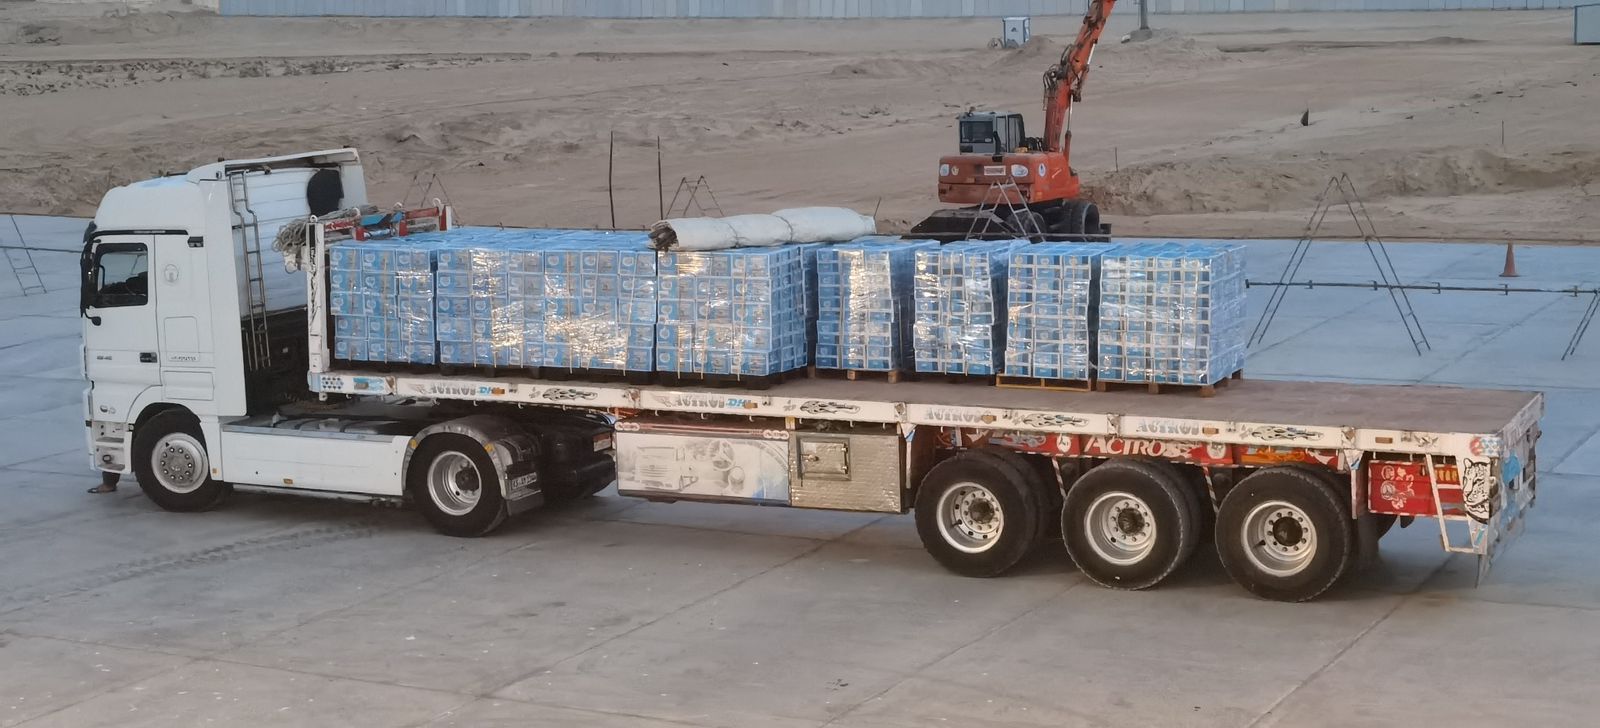 TNI-AL mengimkan bantuan dari air minum minerale untuk Palestina (Ashar/SinPo.id)